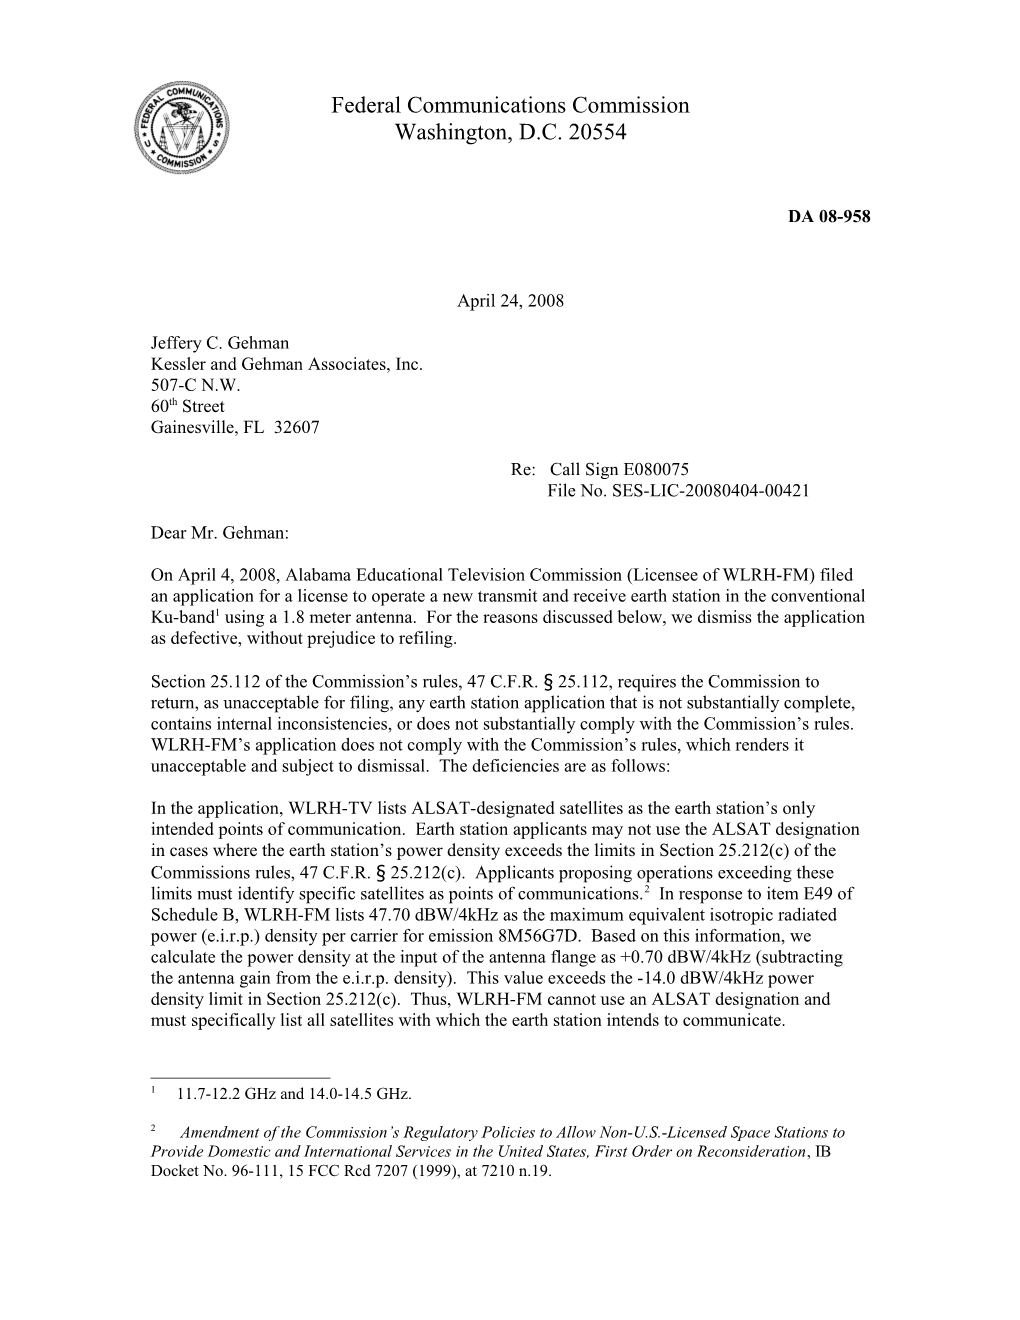 Federal Communications Commission DA 08-958